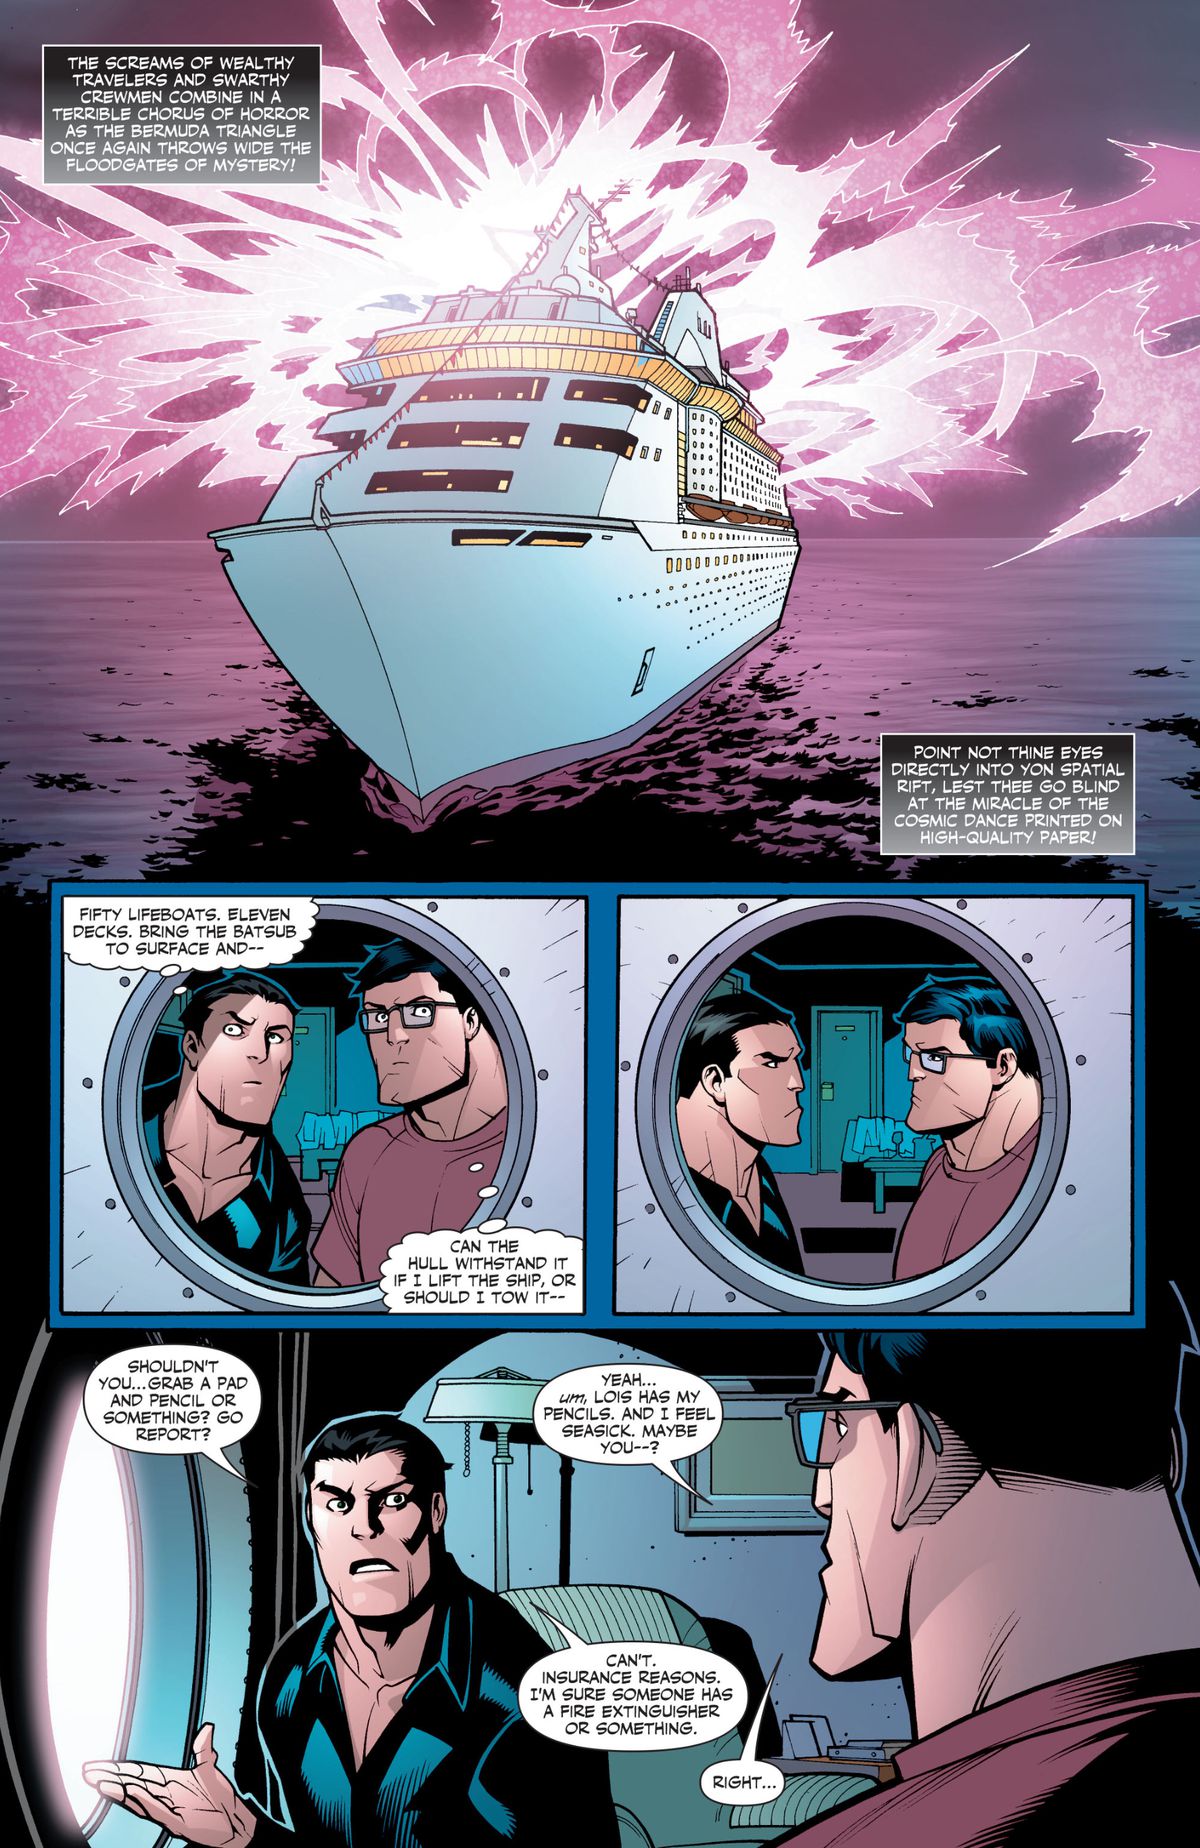 Ocurre un desastre en un crucero, mientras Bruce Wayne y Clark Kent planean internamente cómo salvar el día, y luego cada uno intenta insistir en que el otro abandone la habitación, para que puedan preservar sus identidades secretas, en Superman / Batman Annual # 1, DC Cómics (2006).